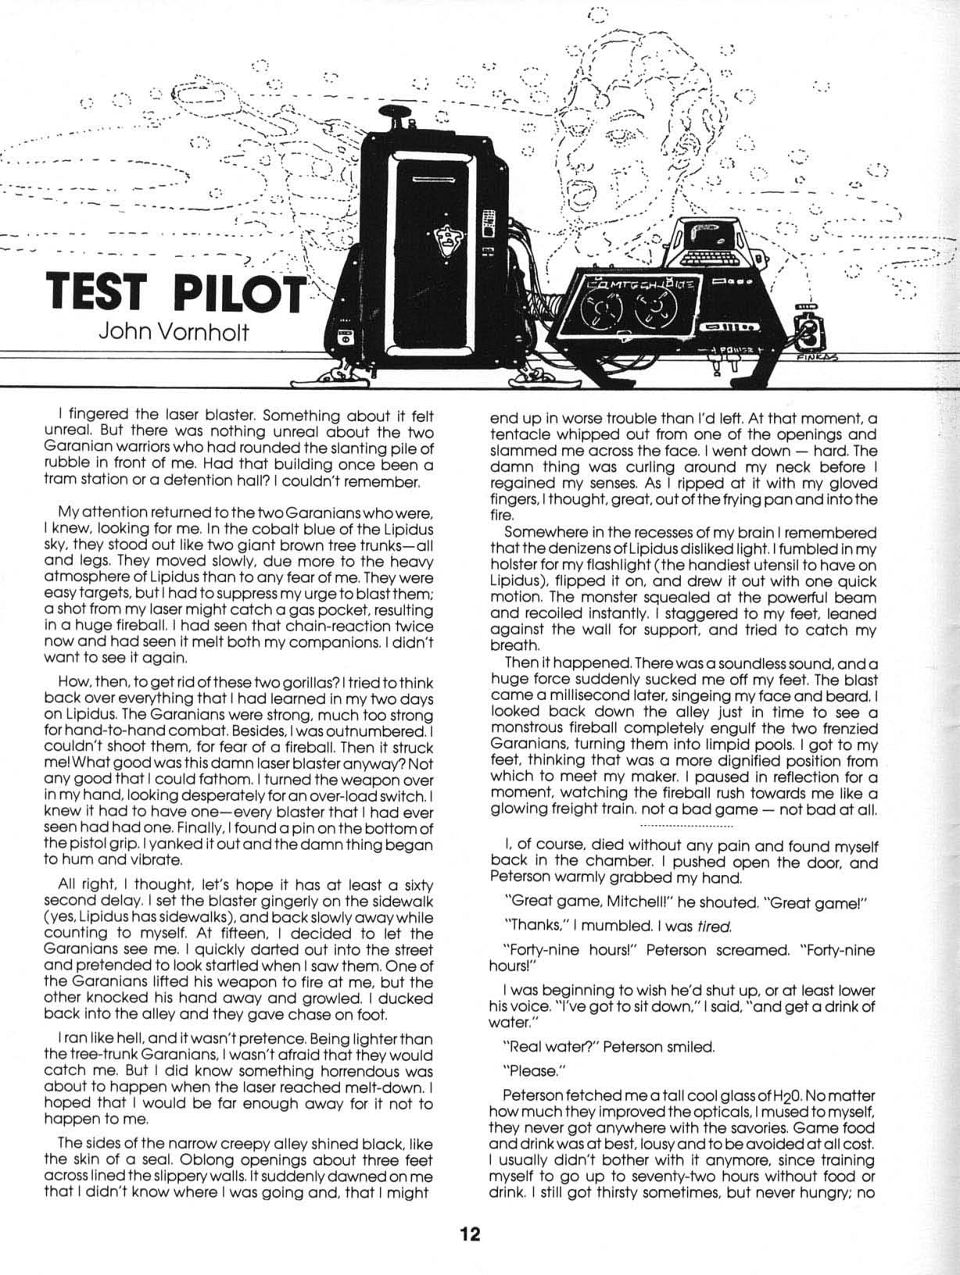 Fiction: Test Pilot